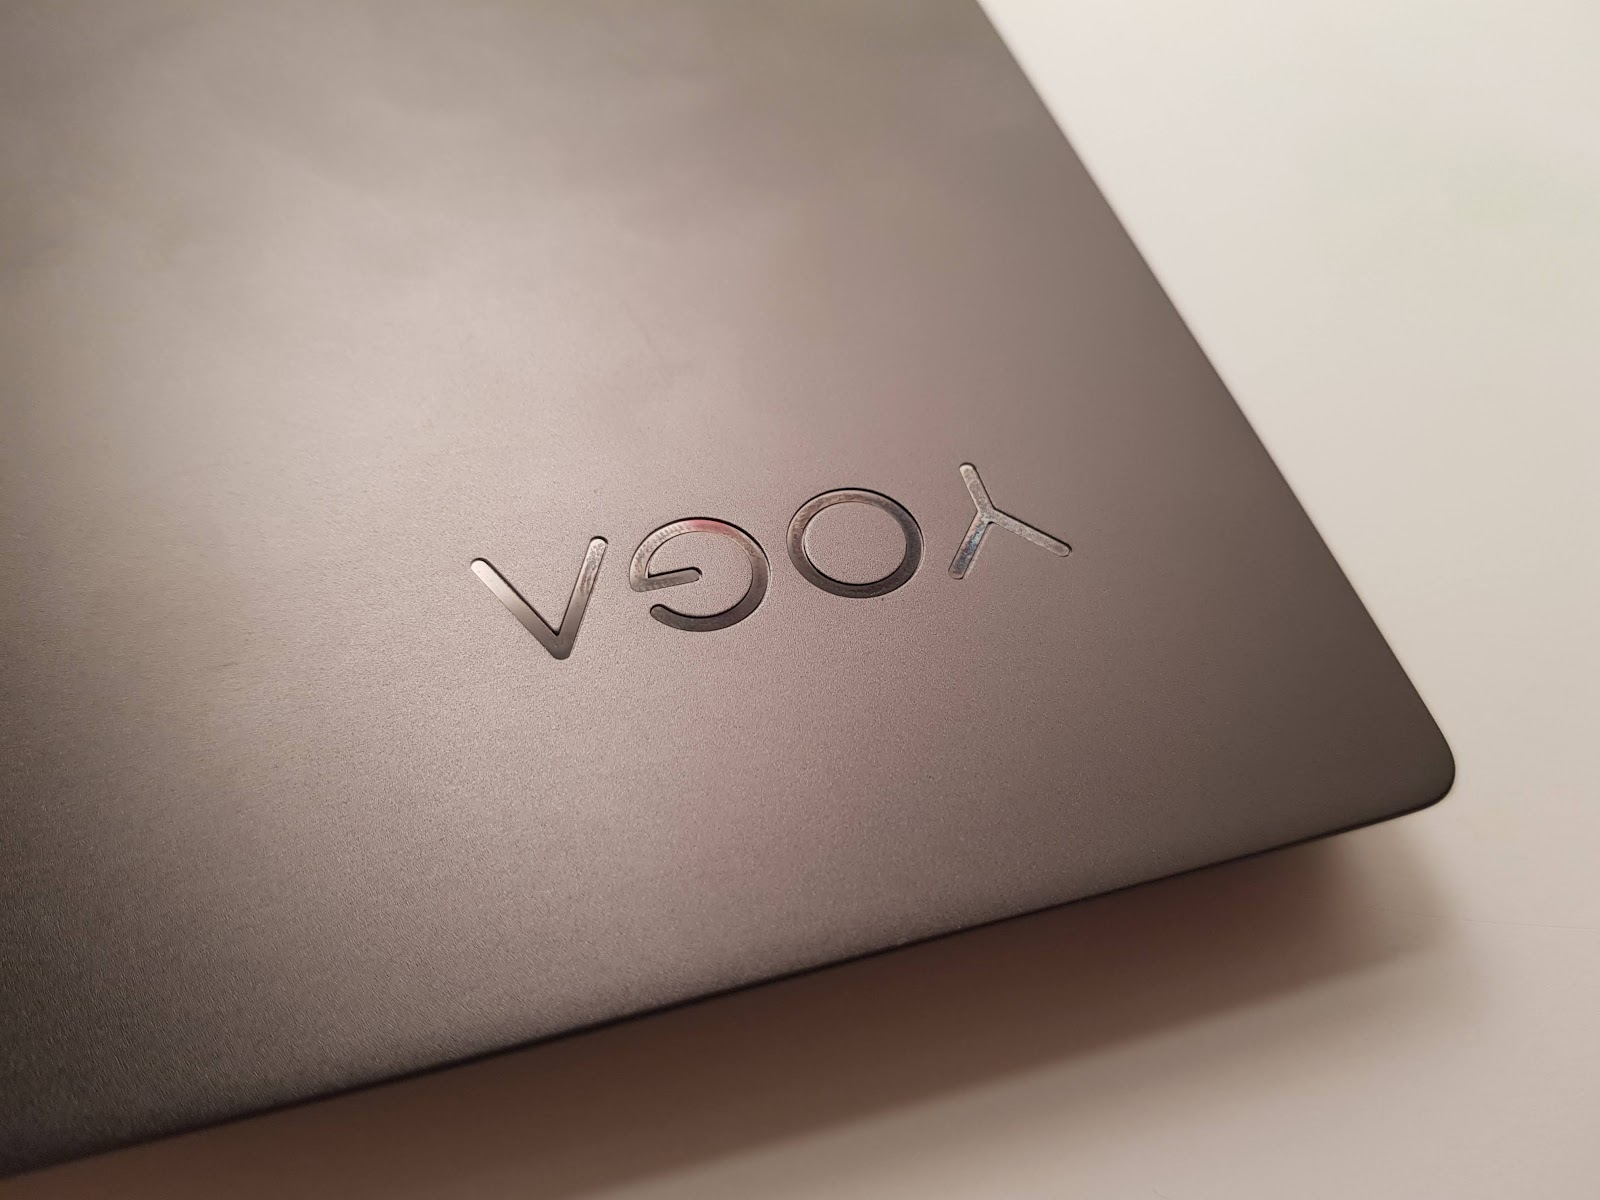 Обзор ноутбука Lenovo S730-13 (2018): мощное железо в стильном алюминиевом корпусе - 24